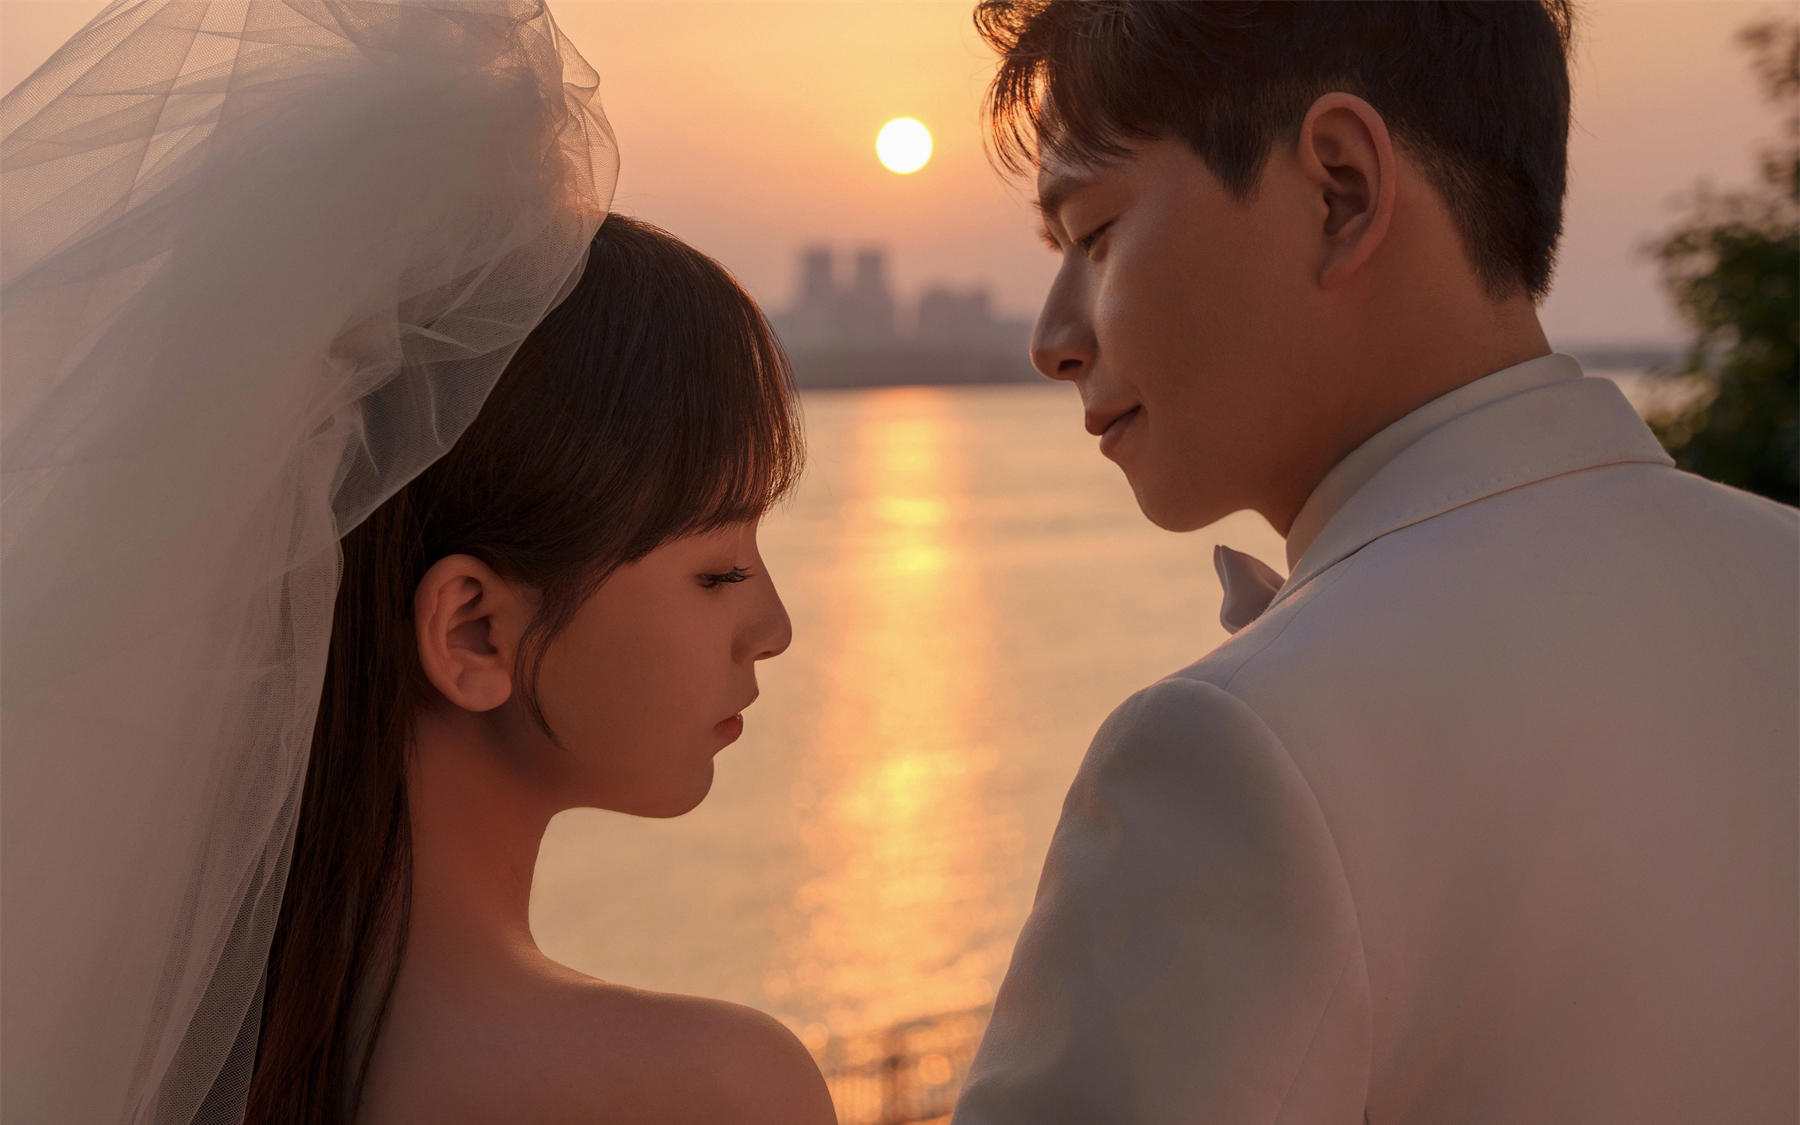 夕阳与江景的浪漫碰撞✨美得像电影画面✔️